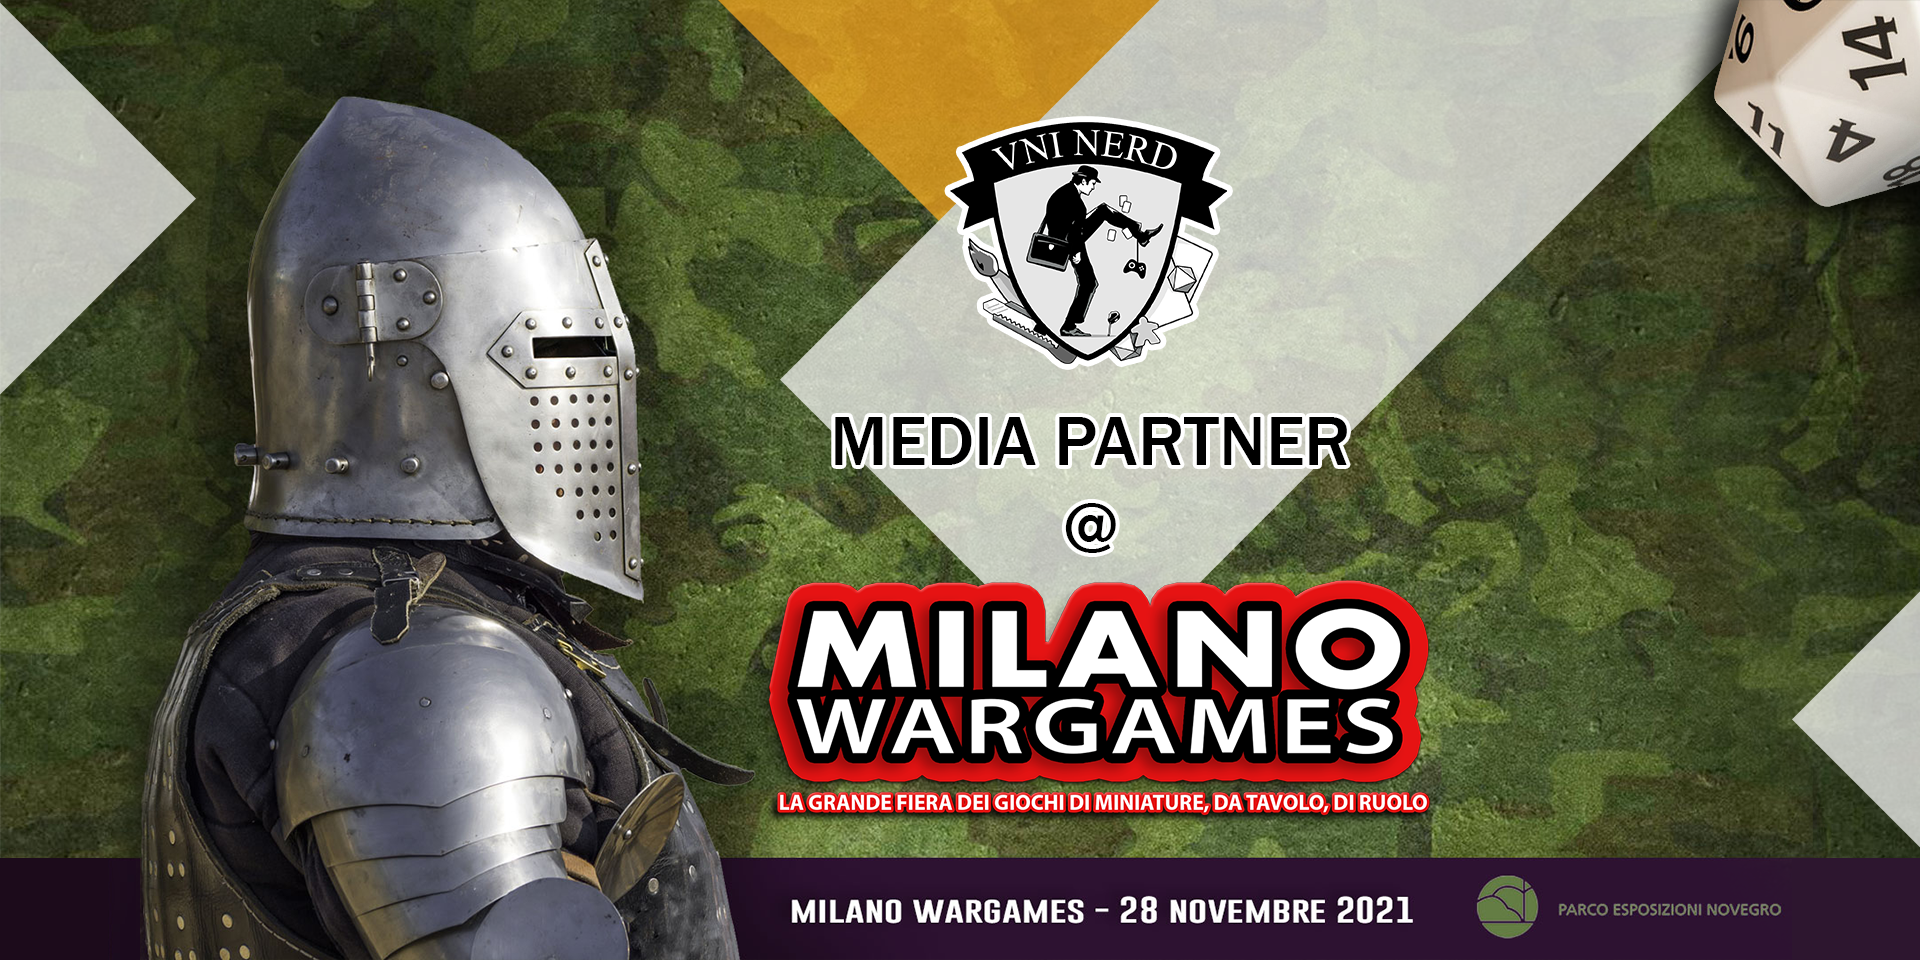 UniNerd media partner a Milano Wargames « UNINERD